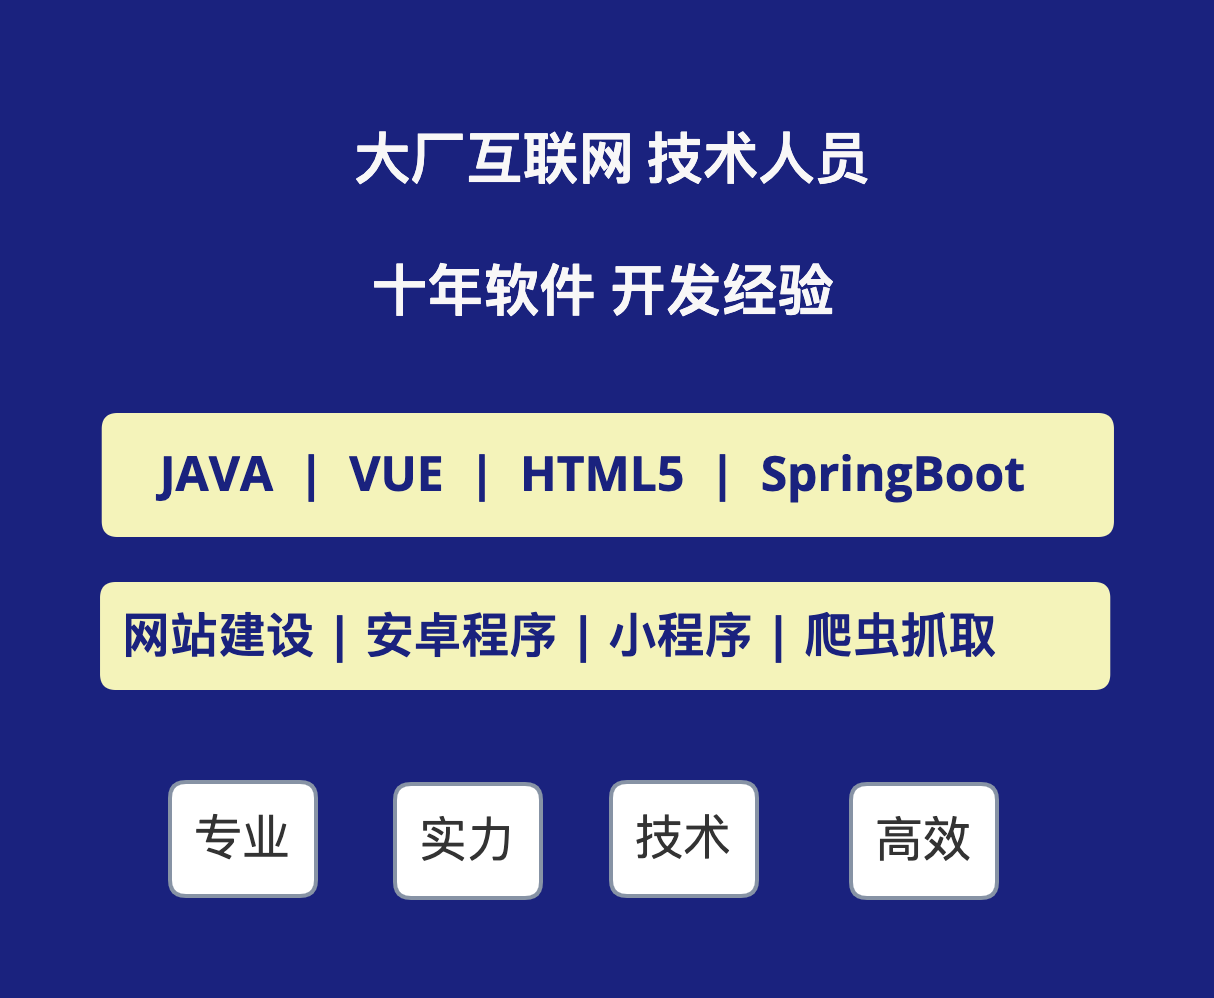 JAVA程序编写建站服务JAVA开发HTML5开发网站开发爬虫